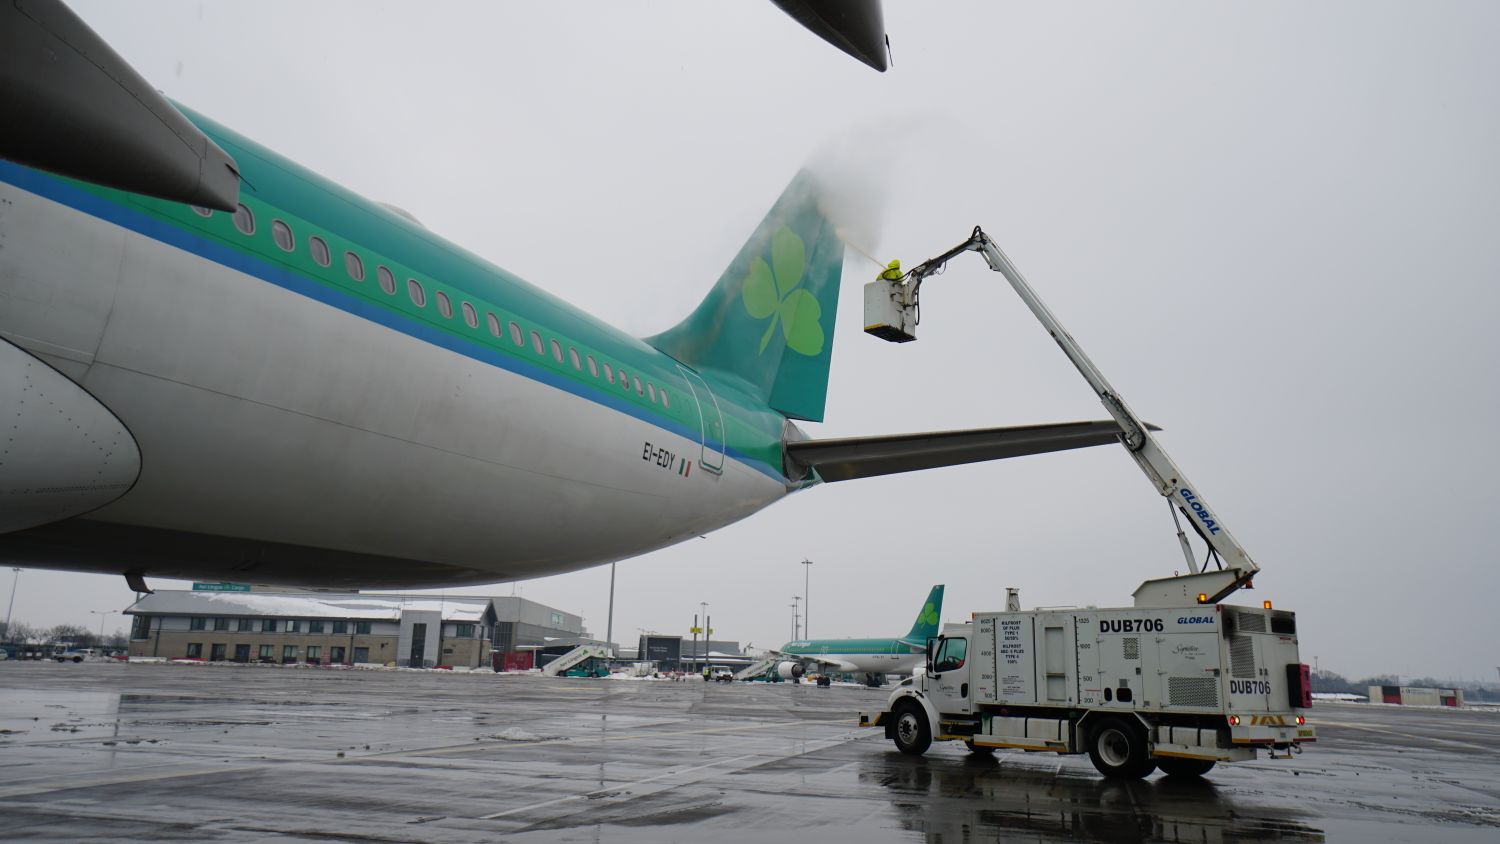 Aer Lingus Planes Twitterised - Genius or PR Stunt?